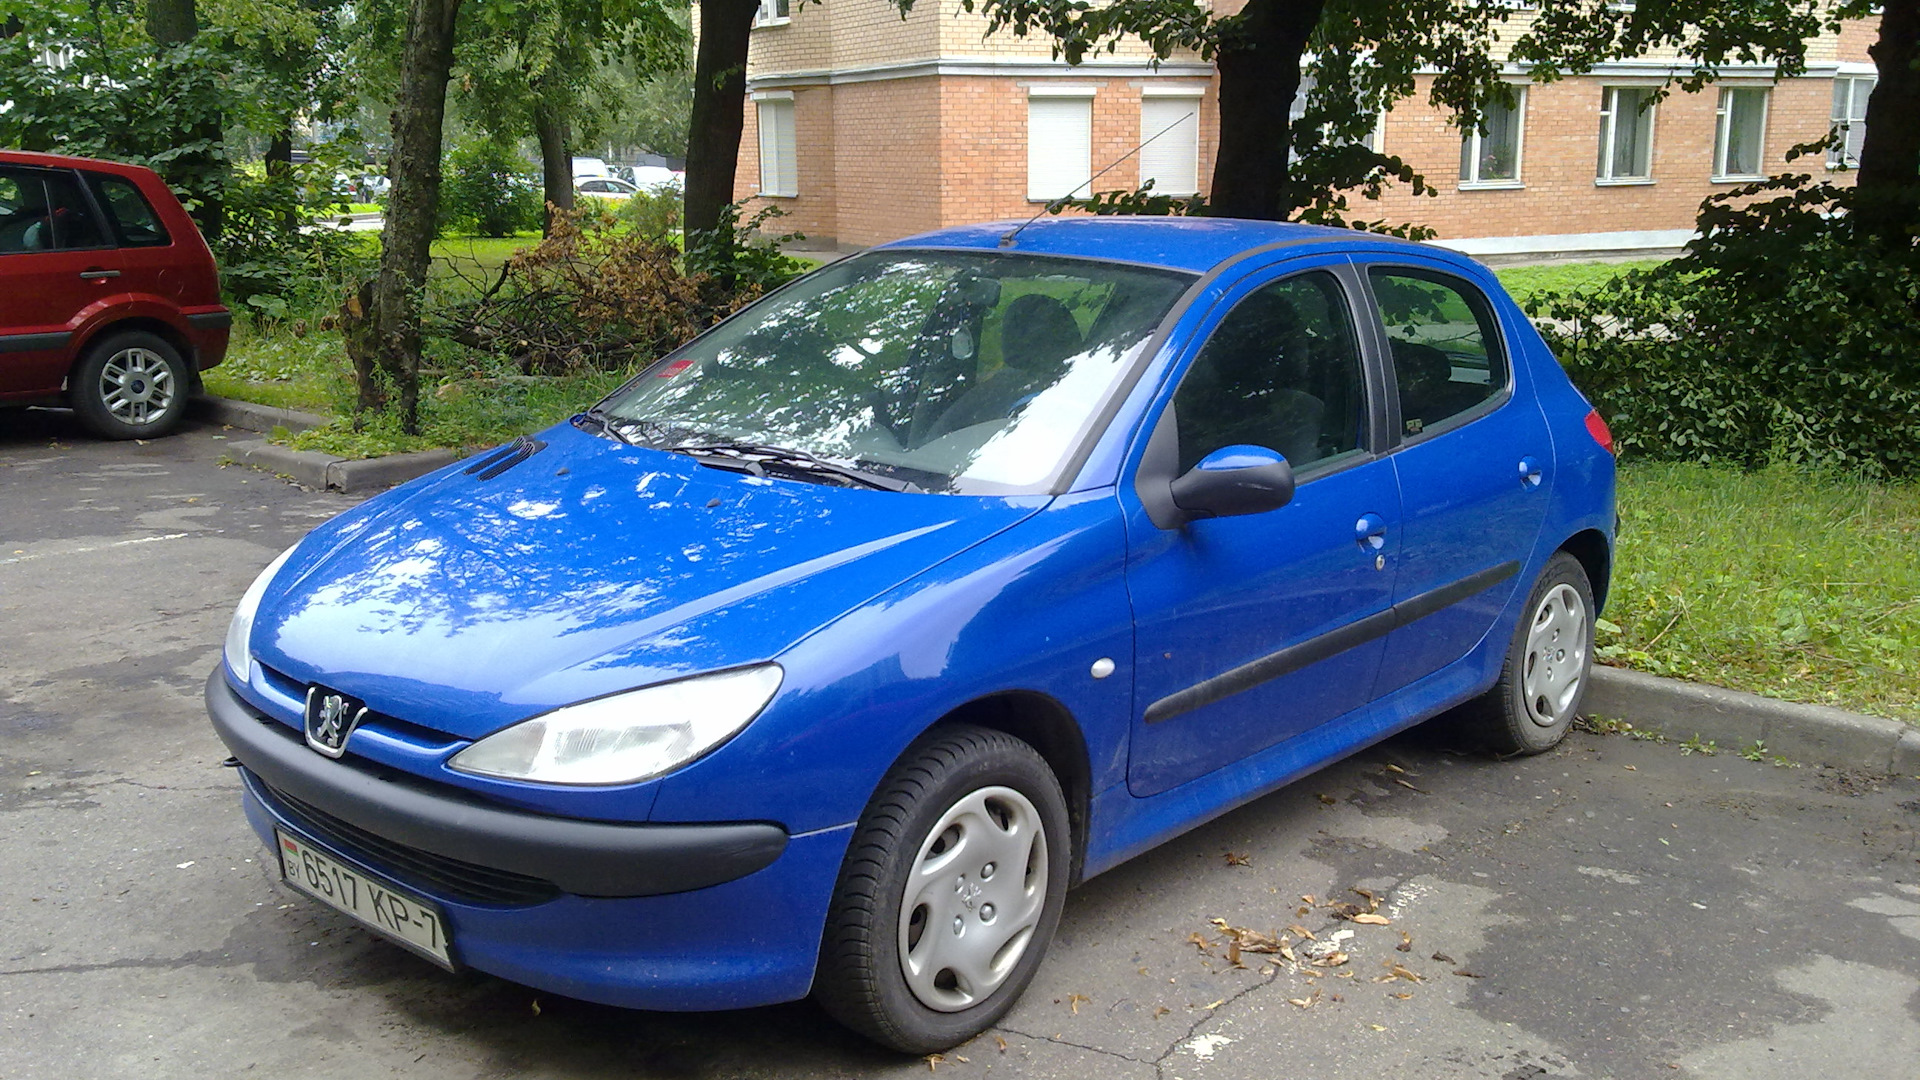 Peugeot 206 1.4. Пежо 206 1.4 бензин. Пежо 206 2003г. Пежо 206 синий. Краска Пежо 206 Blue.